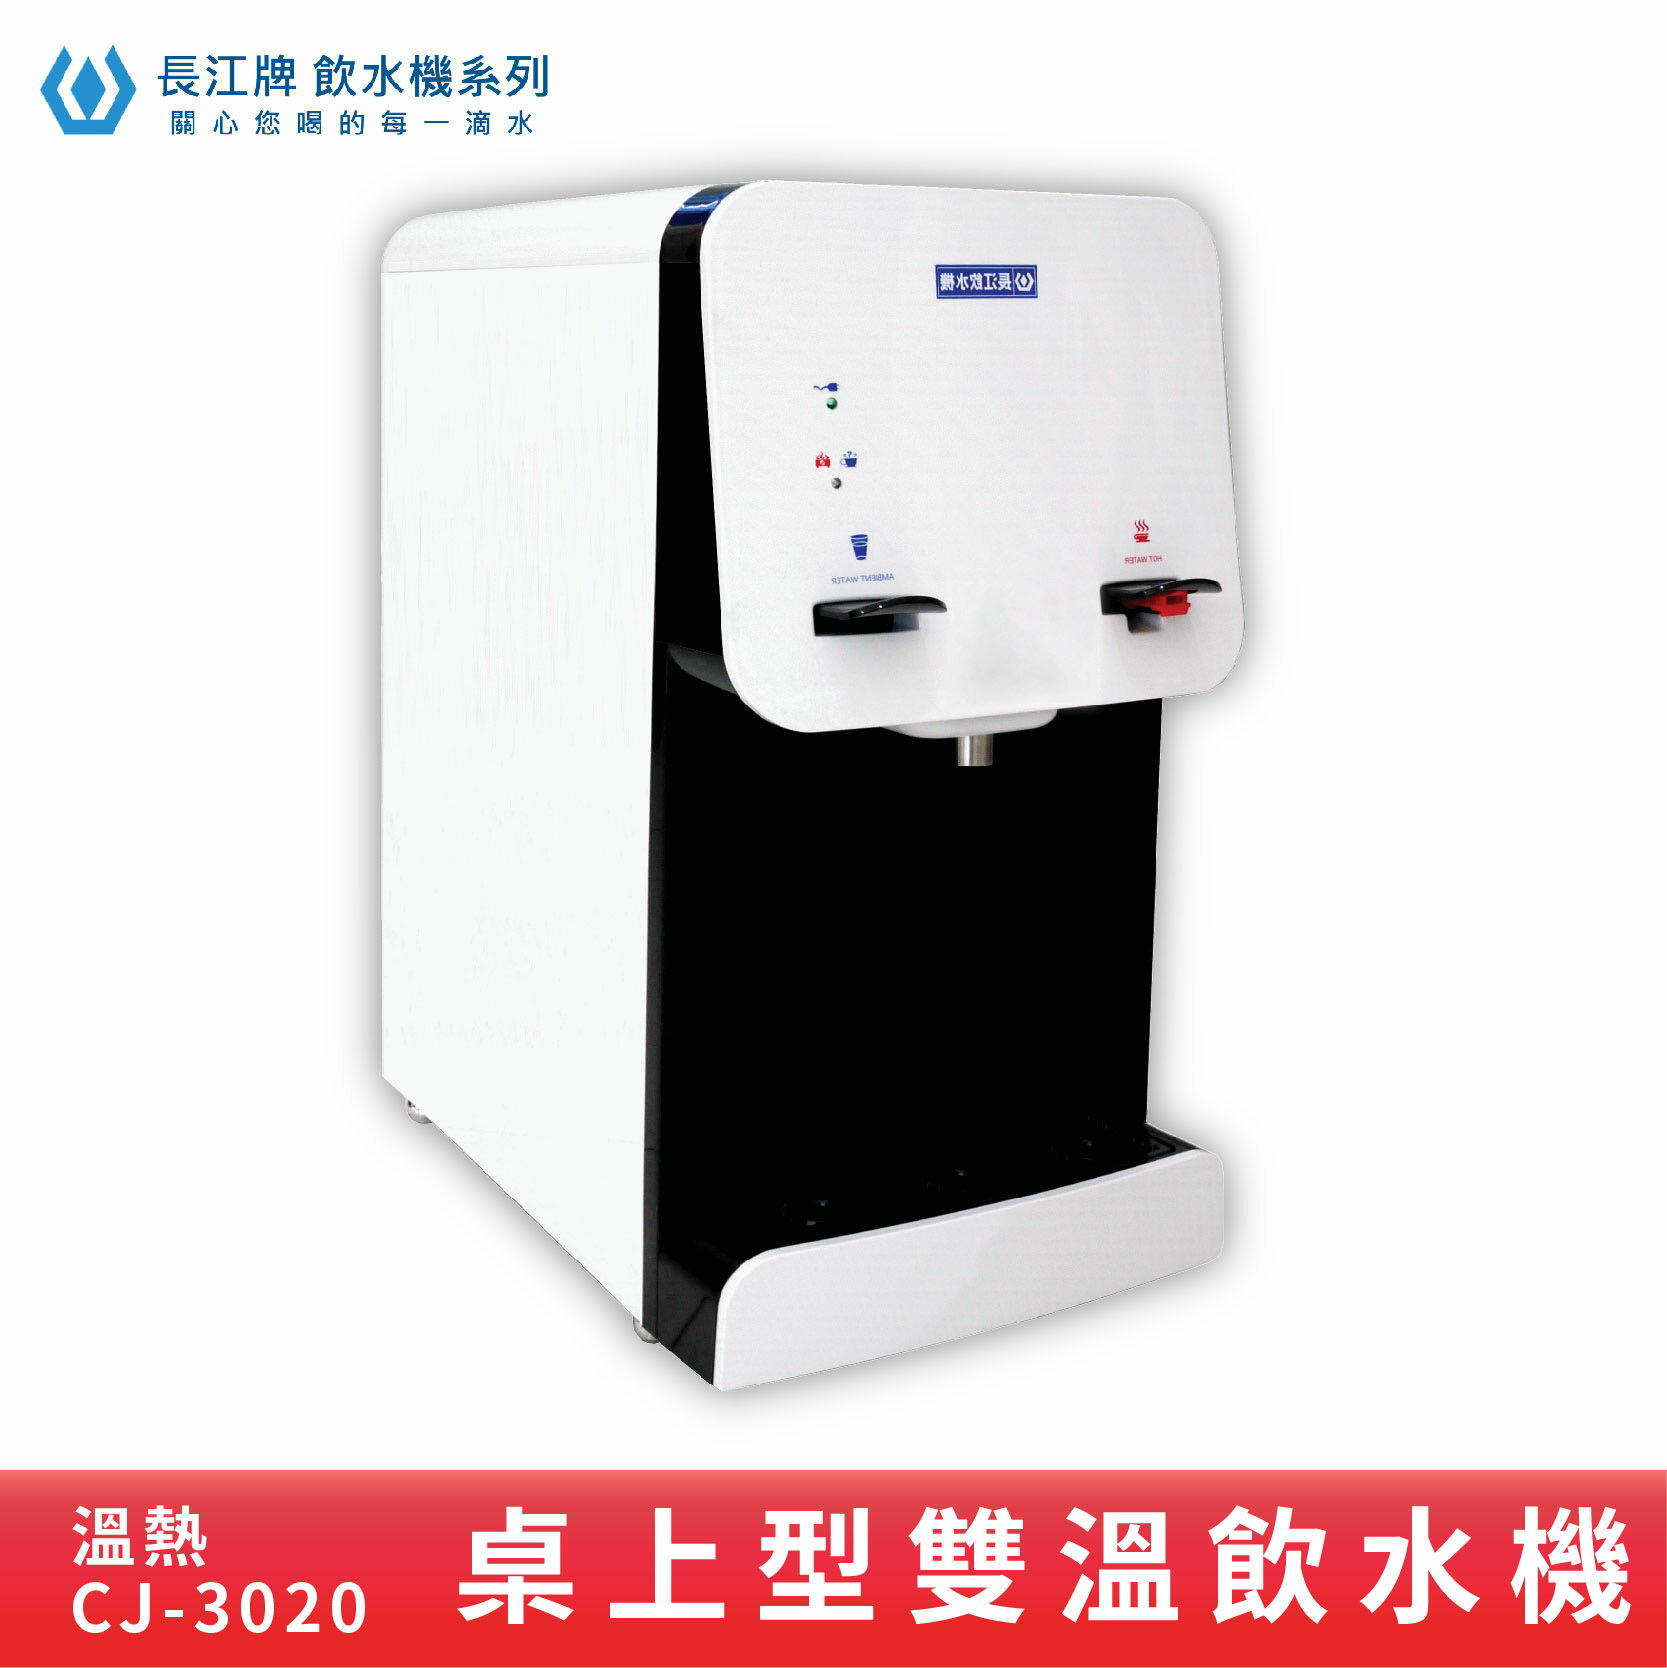 【專業好水】長江牌 CJ-3020 雙溫飲水機 溫熱 超淨型飲水機 學校 公司 茶水間 公共設施 台灣製造